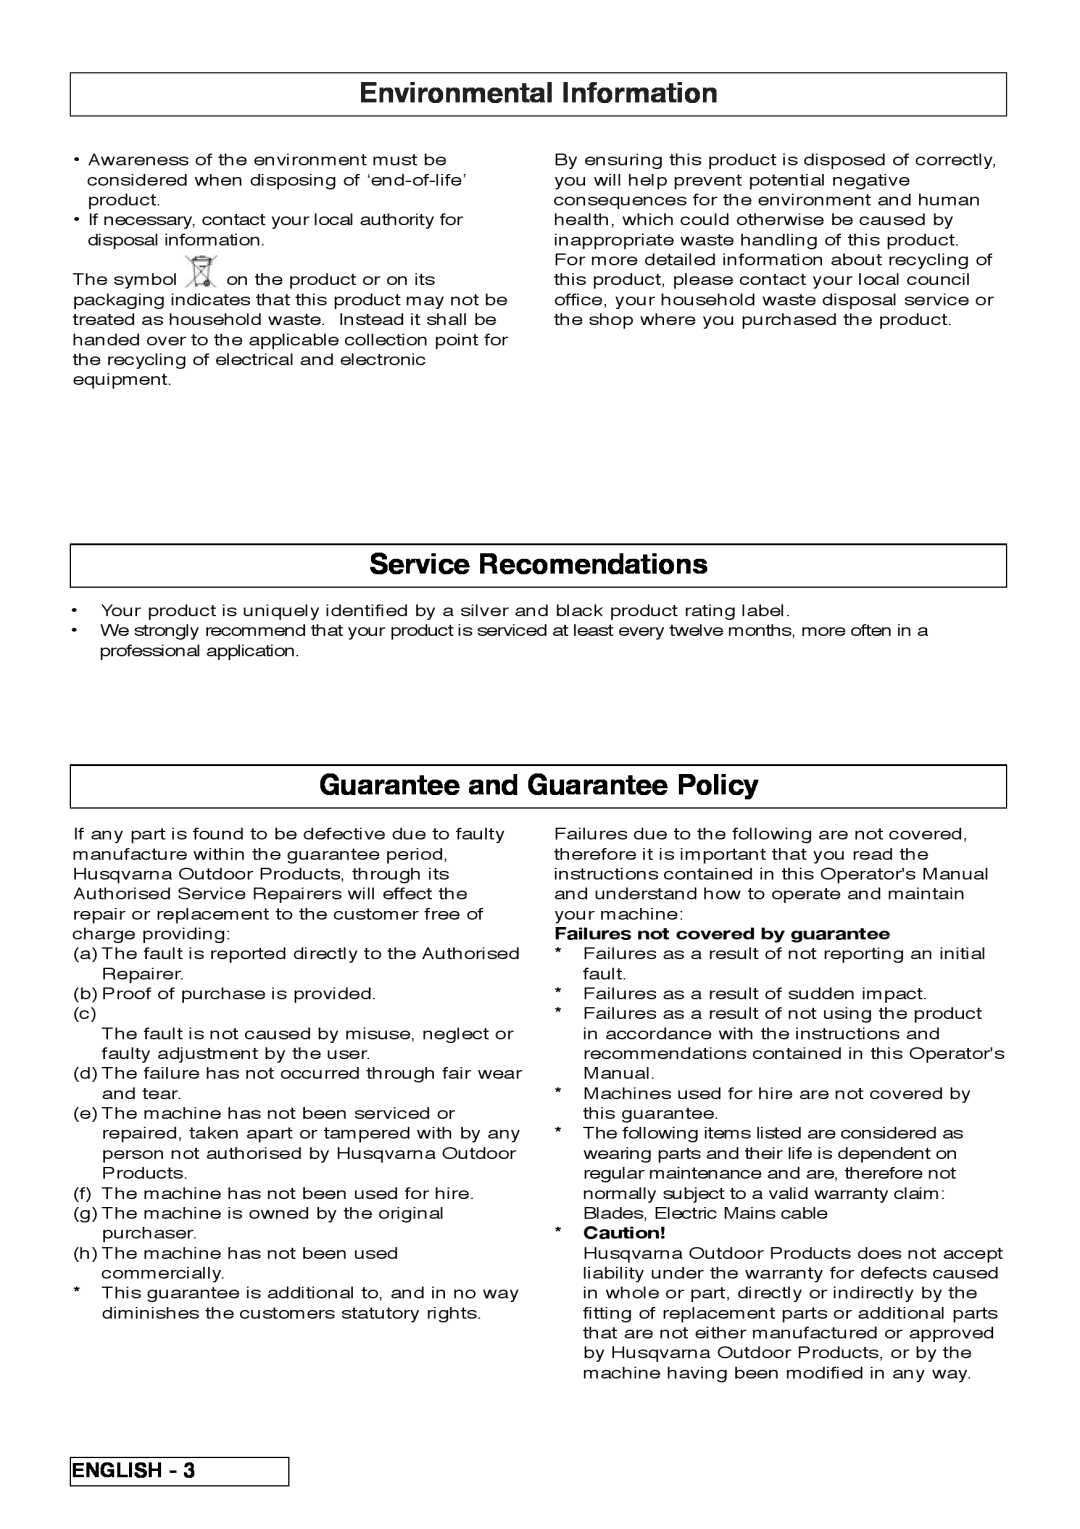 Flymo VM032 manual Environmental Information, Service Recomendations, Guarantee and Guarantee Policy, English 